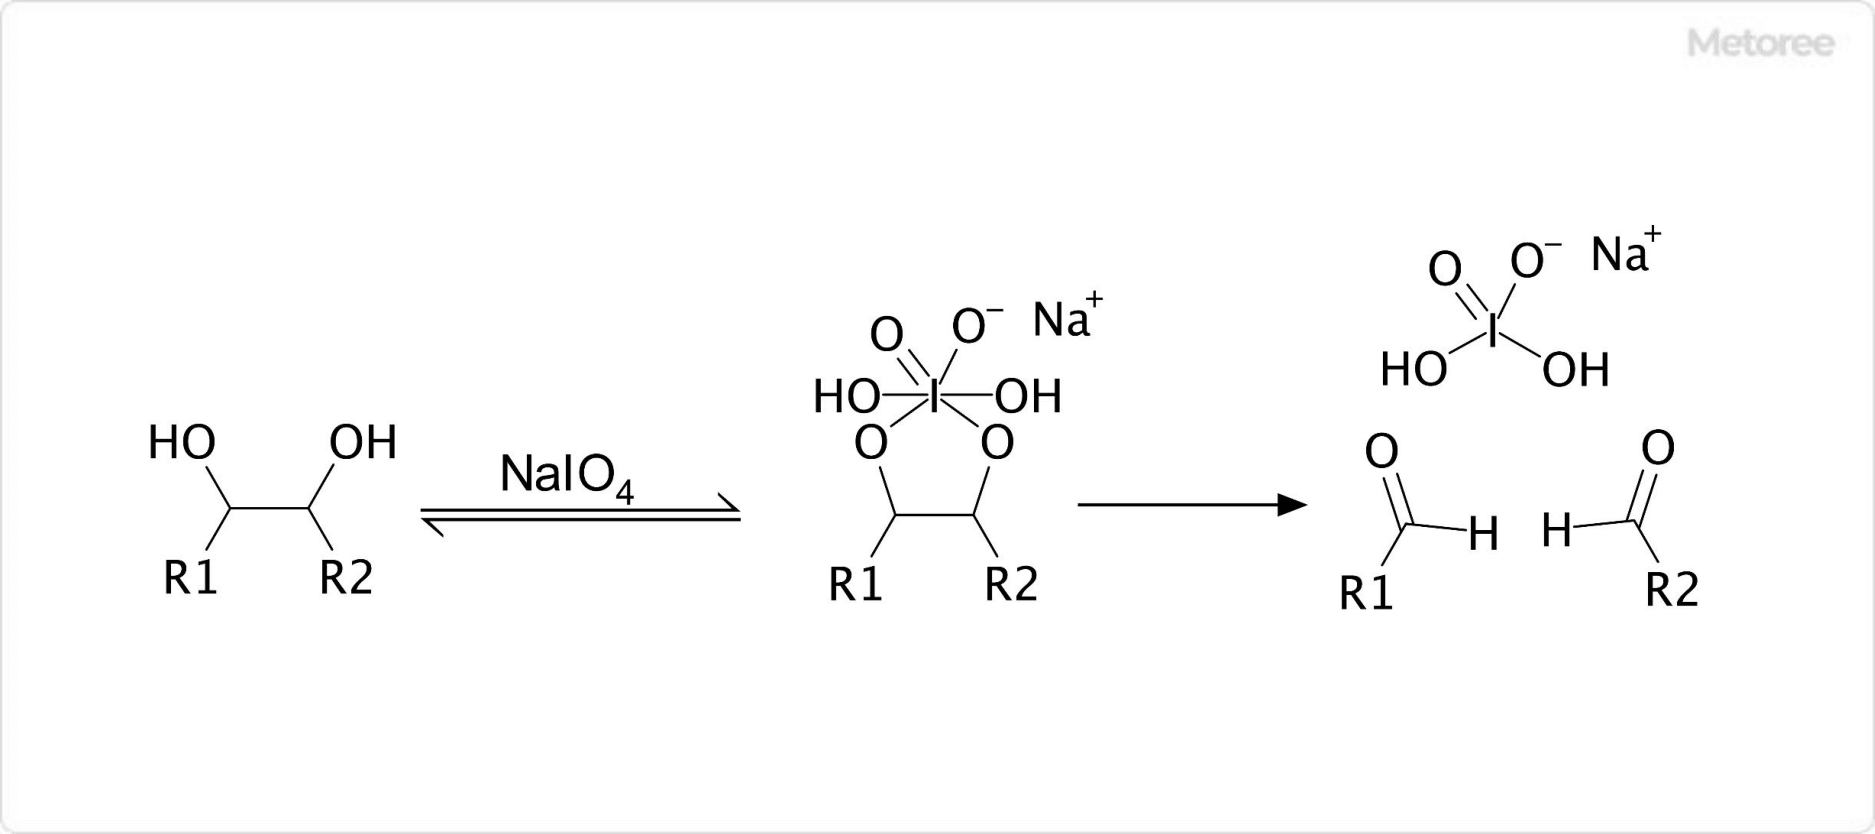 過ヨウ素酸ナトリウムを用いた有機合成反応 (1,2-ジオールの開裂)